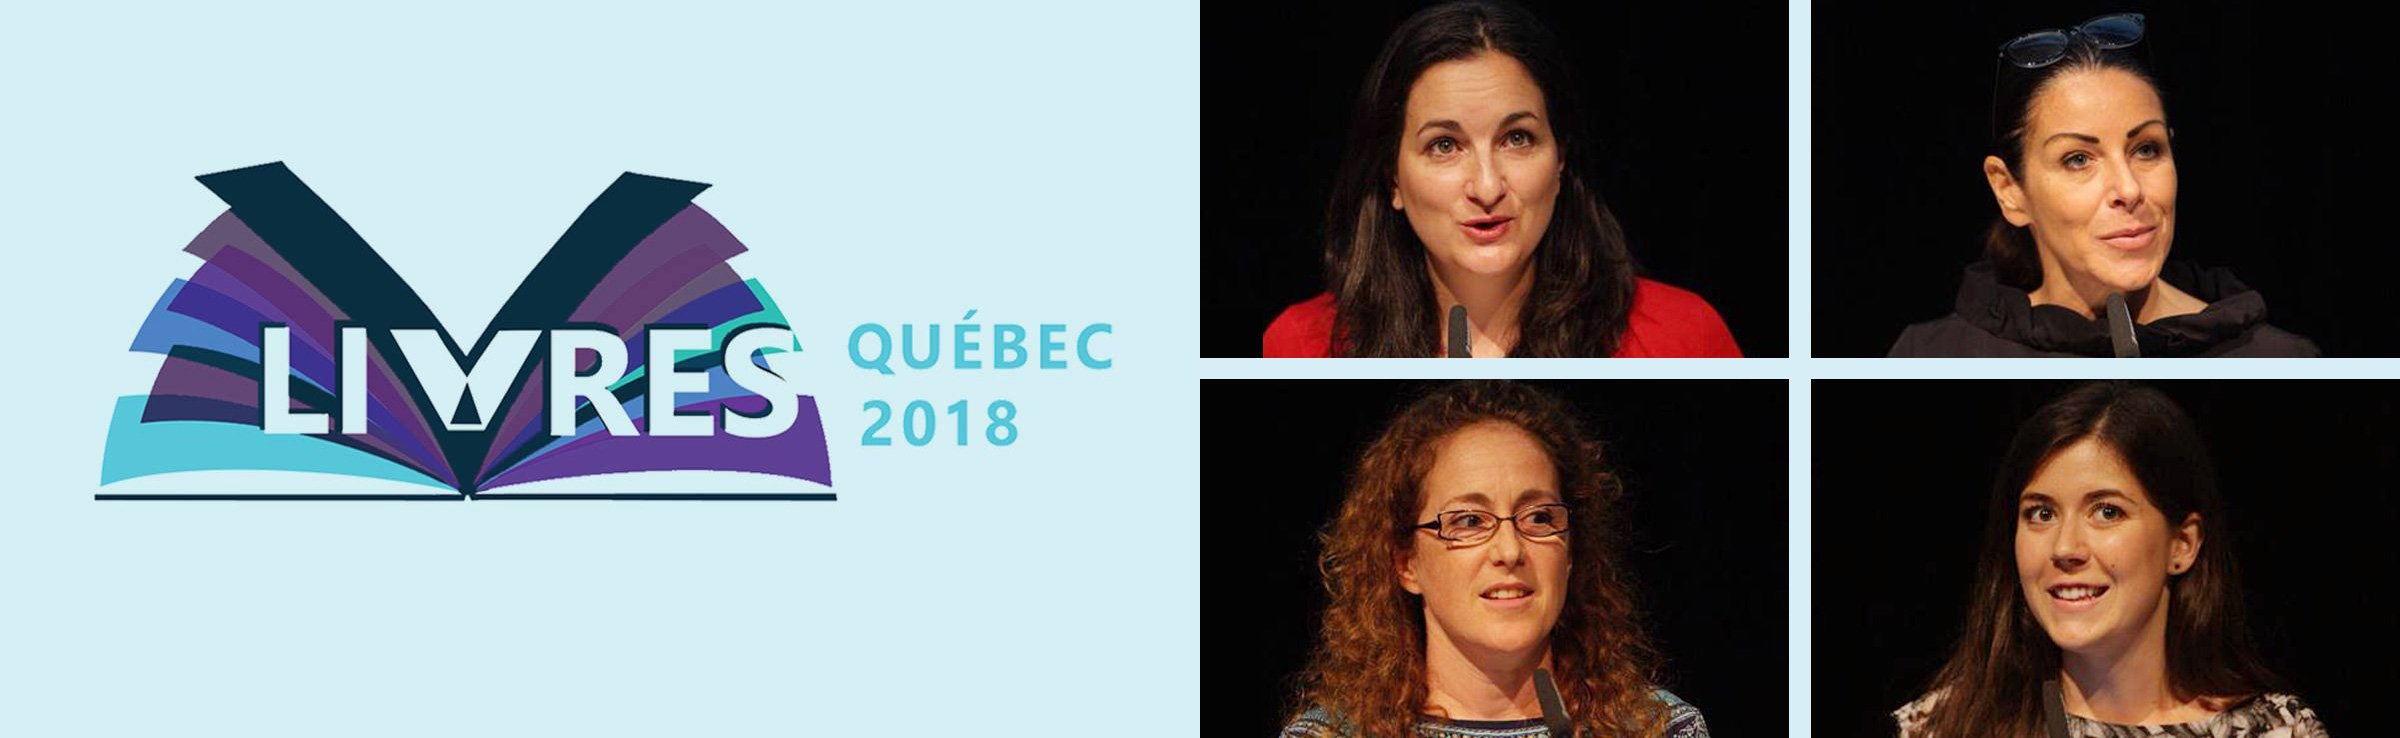 Livres Québec 2018